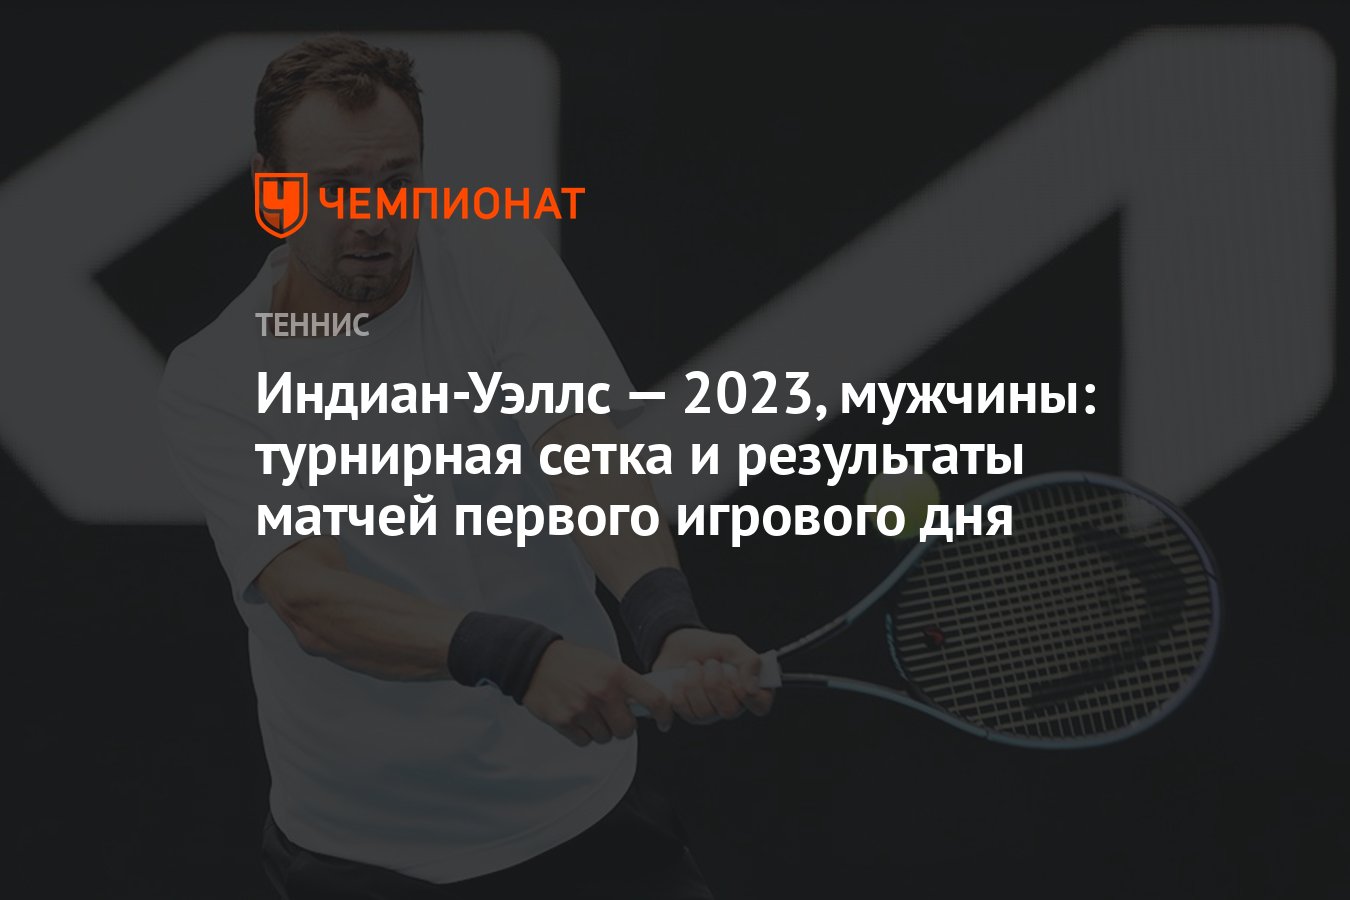 Теннис индиана уэльс 2024 турнирная сетка мужчины